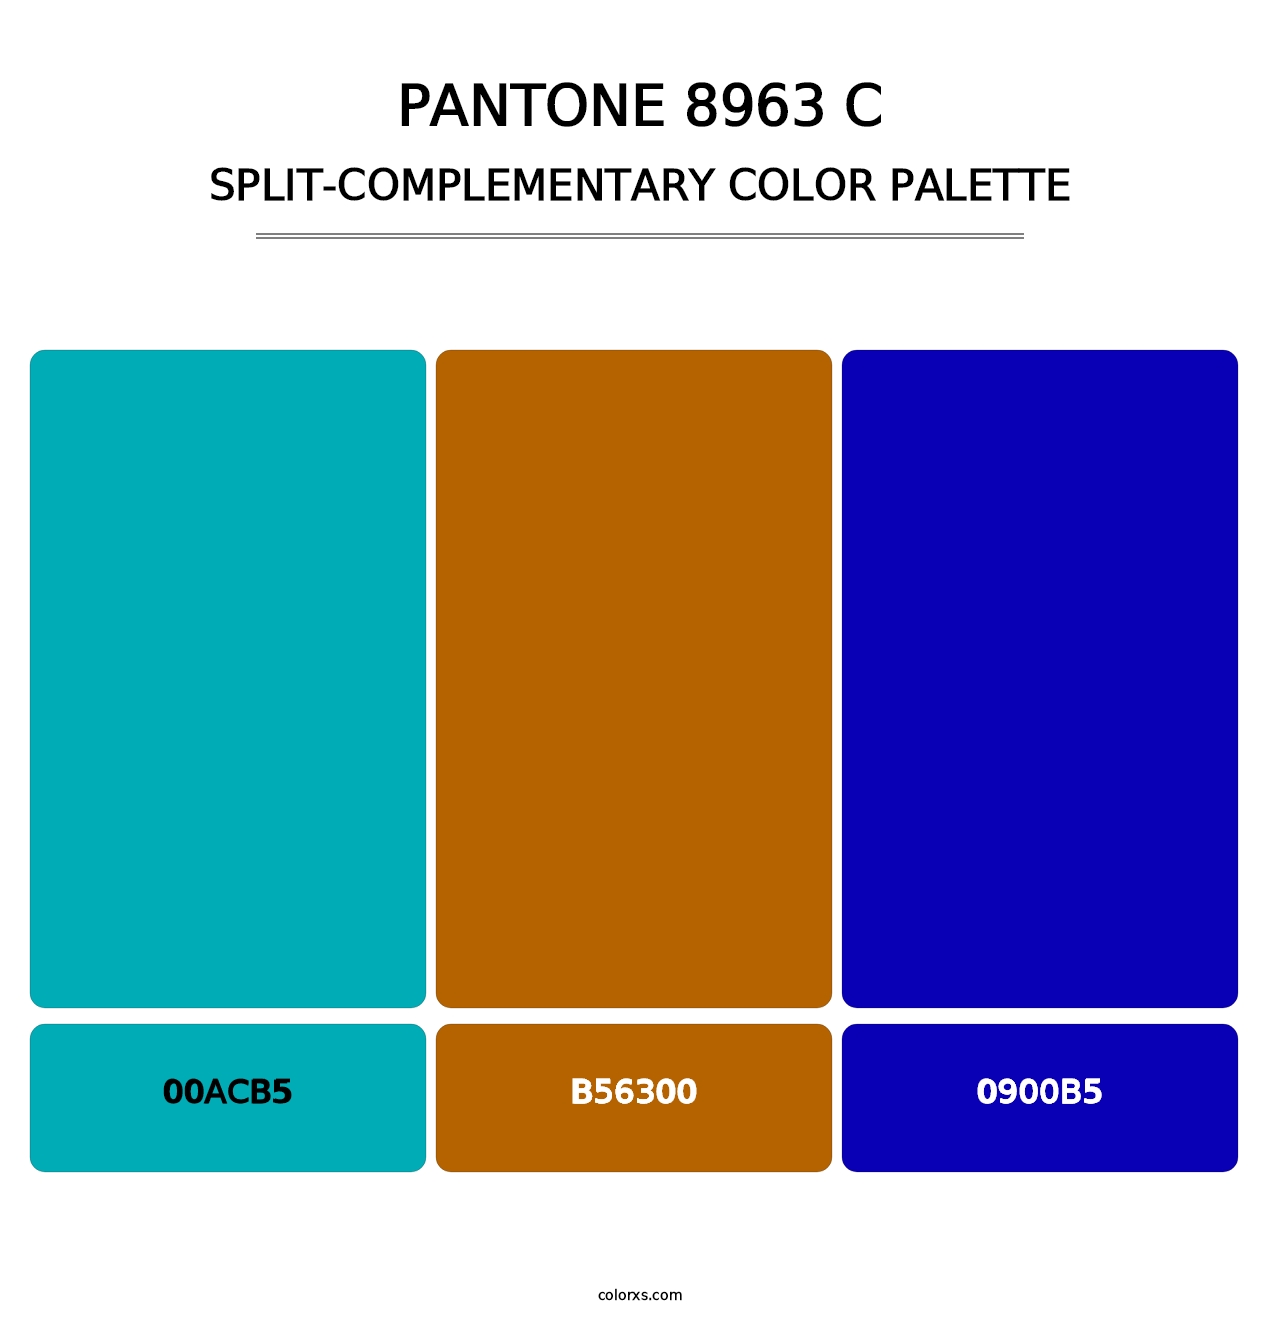 PANTONE 8963 C - Split-Complementary Color Palette